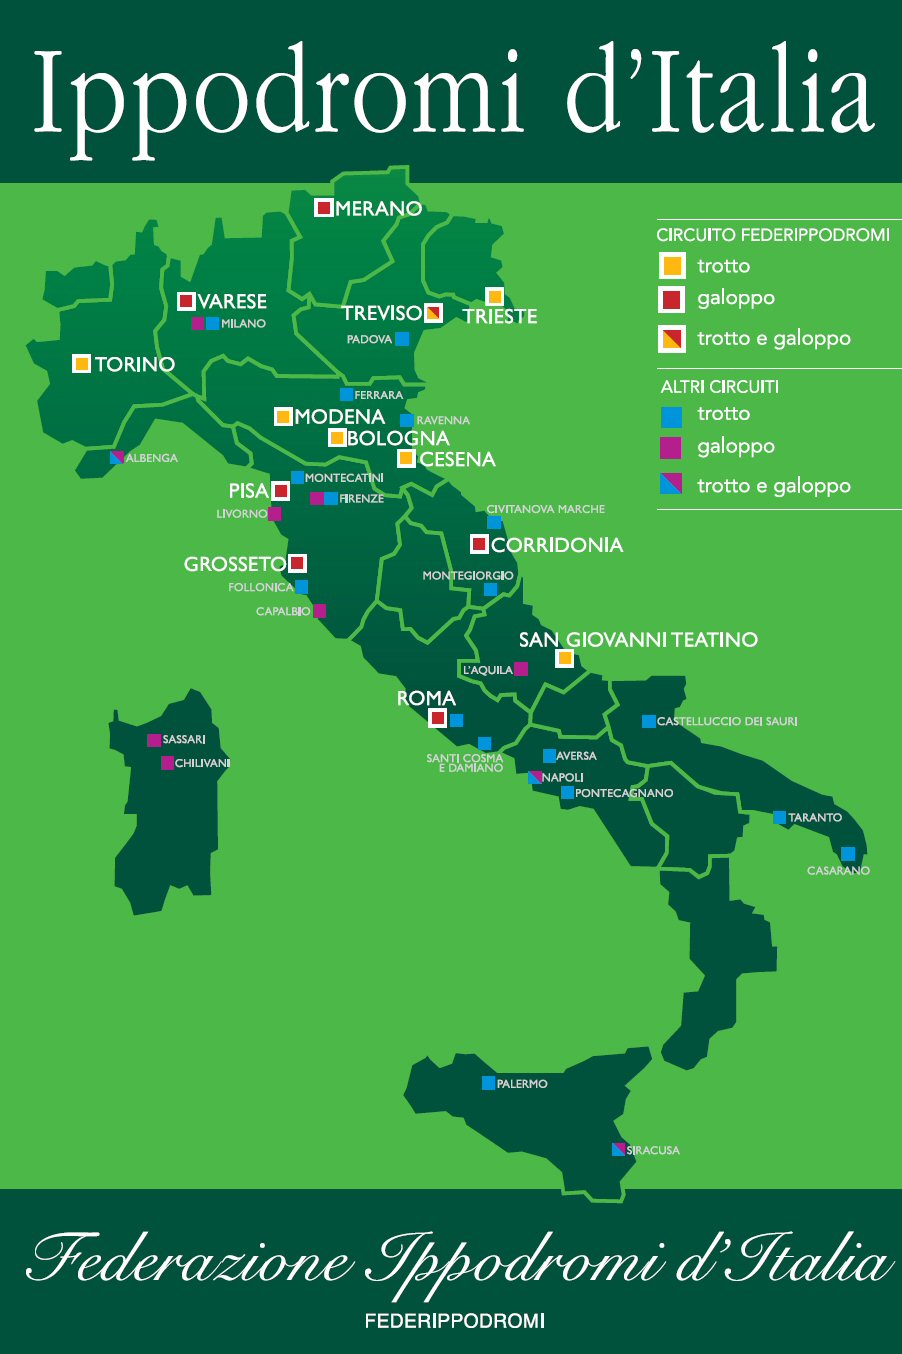 Federazione Ippodromi d'Italia